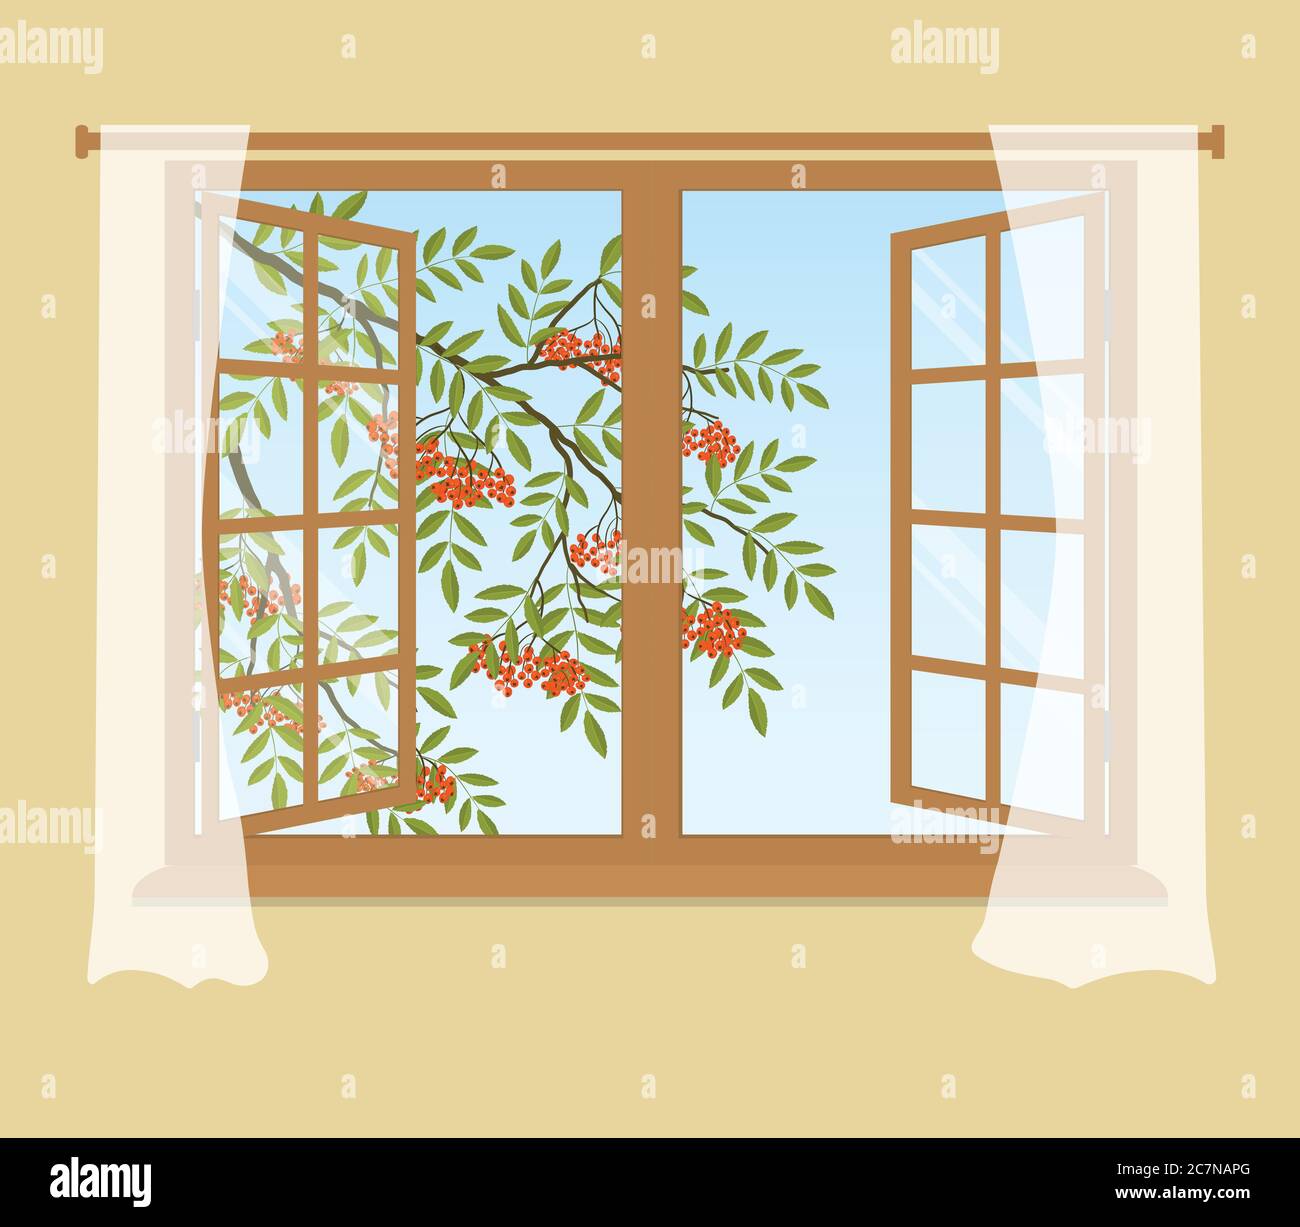 Branche de rang en dehors de la fenêtre. Baies d'orange avec feuilles vertes. Fenêtre ouverte avec rideaux sur fond beige. Illustration vectorielle Illustration de Vecteur